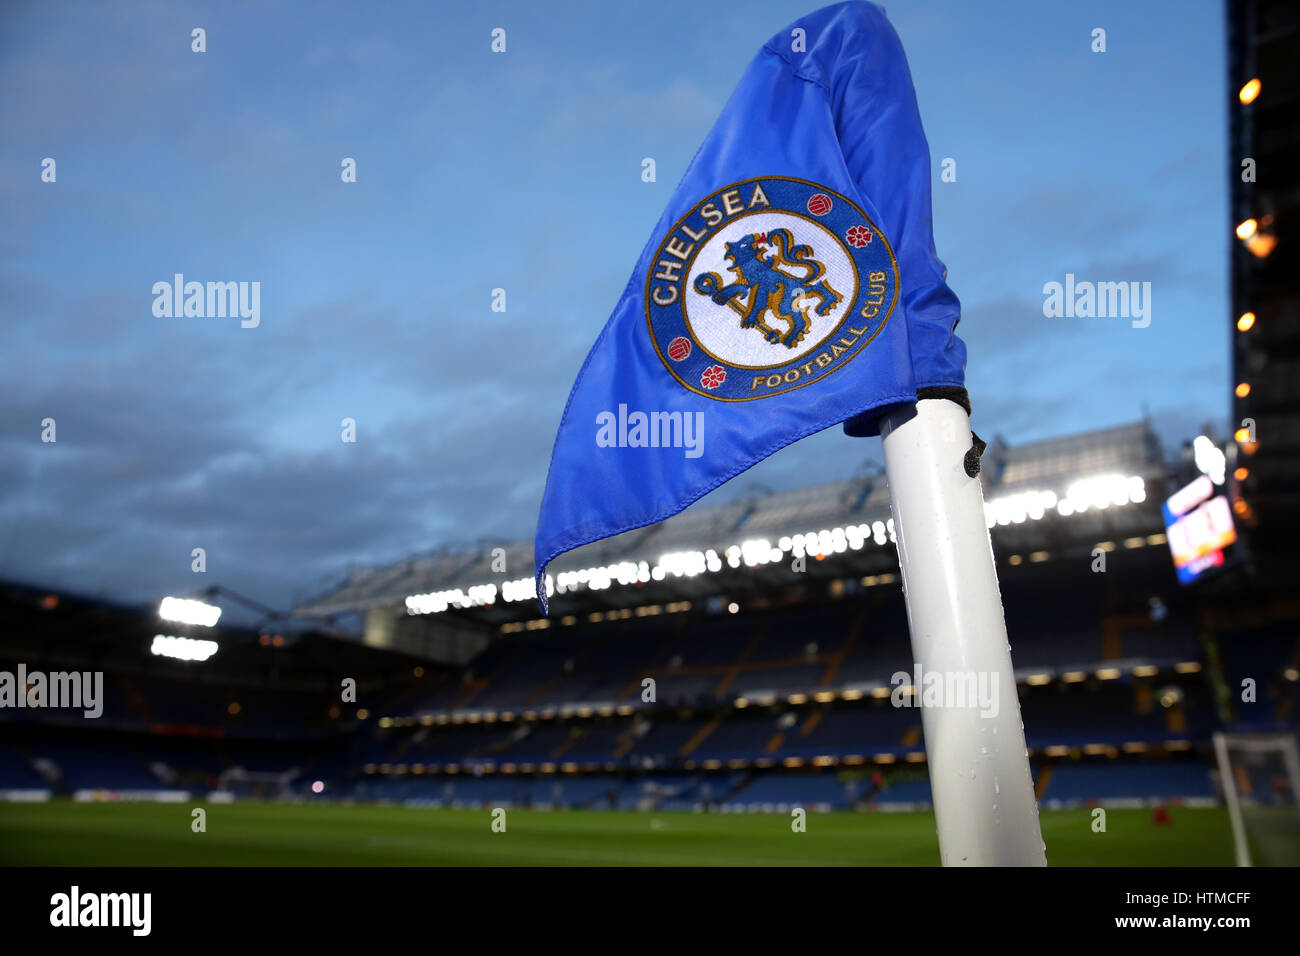 Ein Blick auf eine Eckfahne bevor die Emirates FA Cup, letzte Quartal an der Stamford Bridge, London entsprechen. Stockfoto